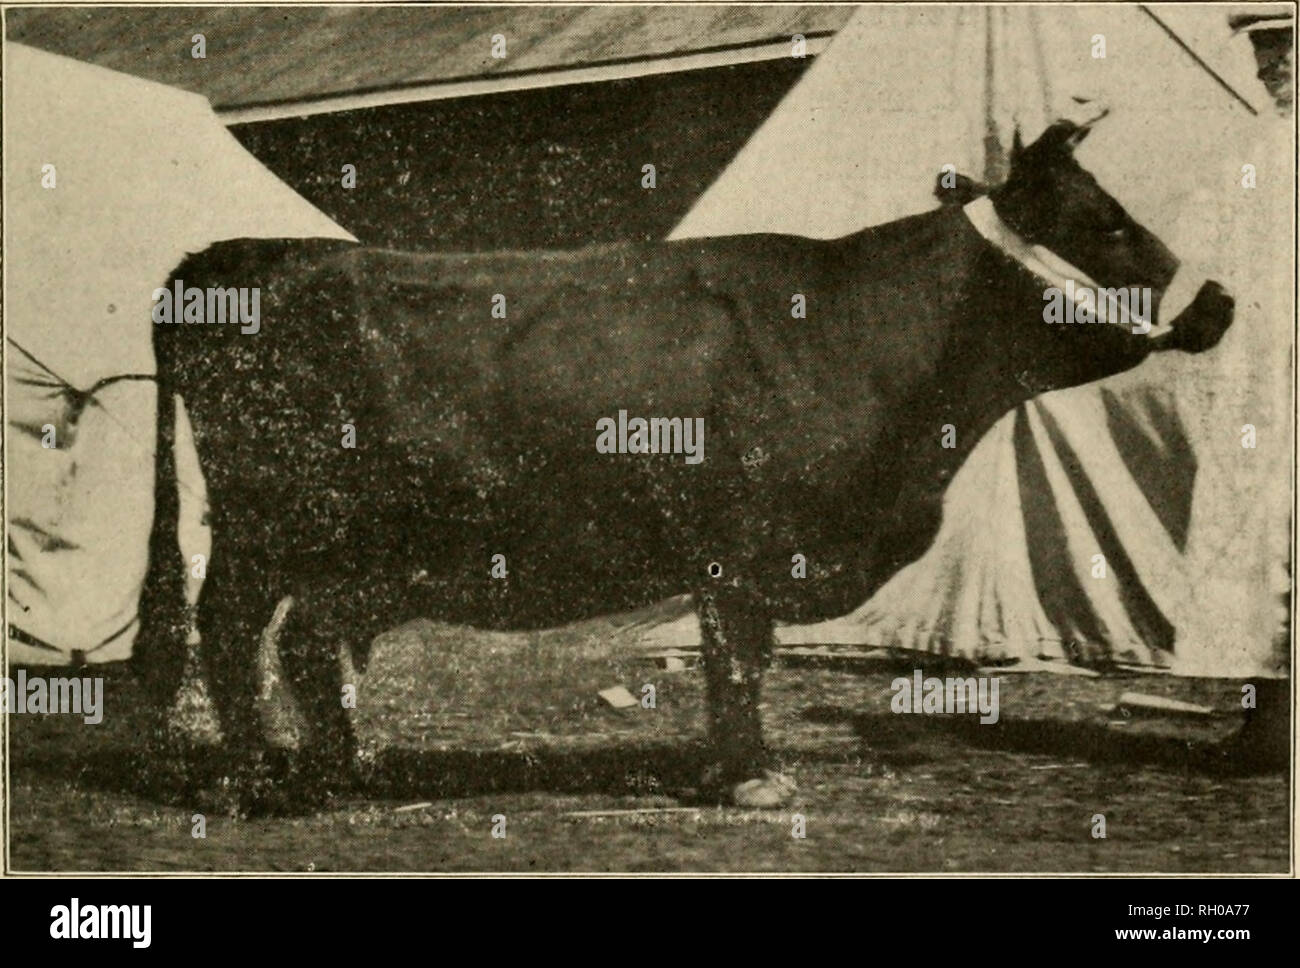 . Bulletin. Kerry cattle; Dexter cattle. -5- teats being